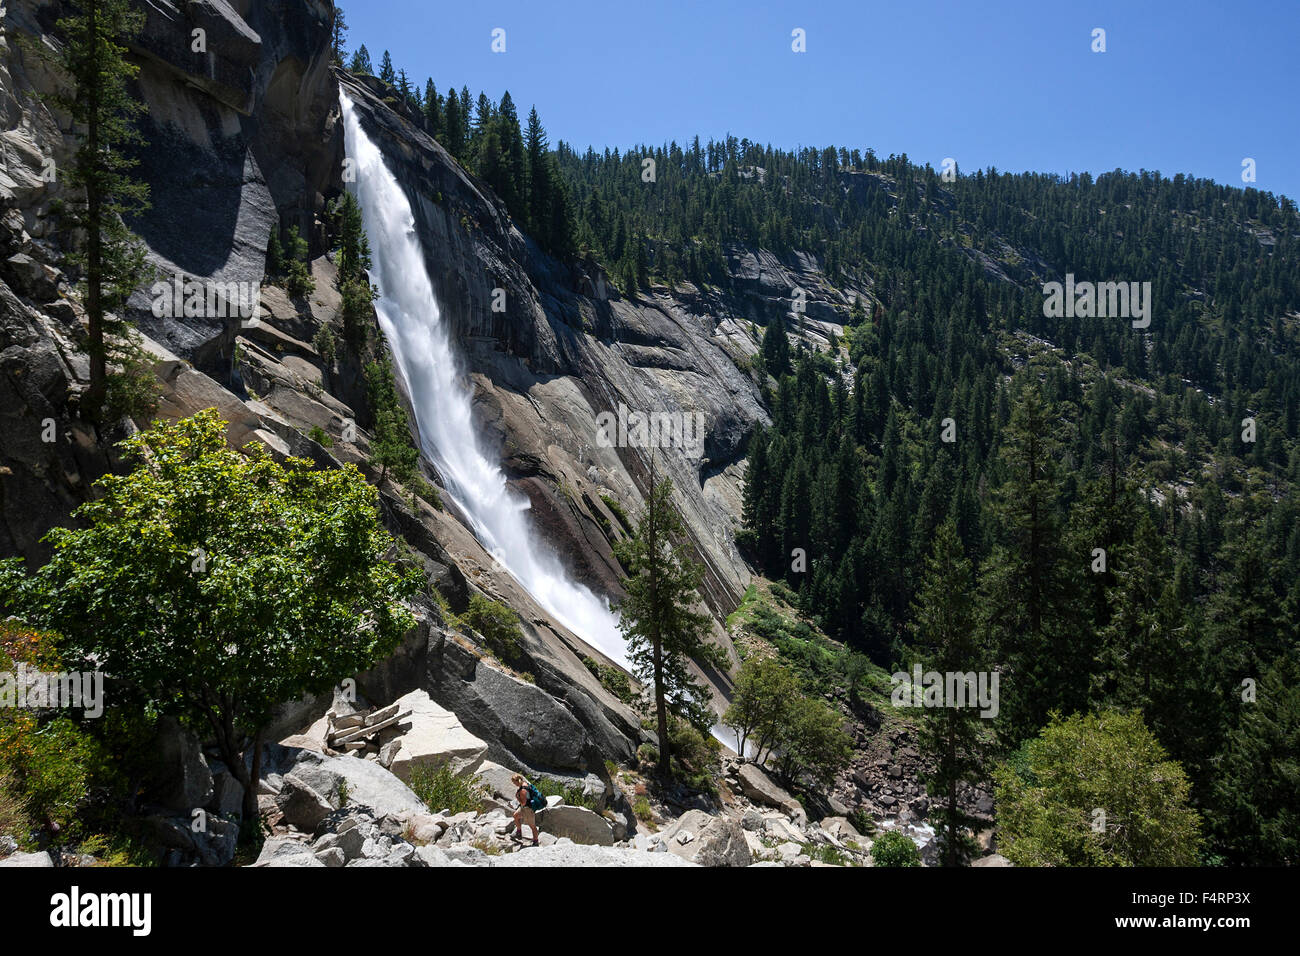 Waterfall, Nevada Fall, Yosemite National Park, USA Stock Photo